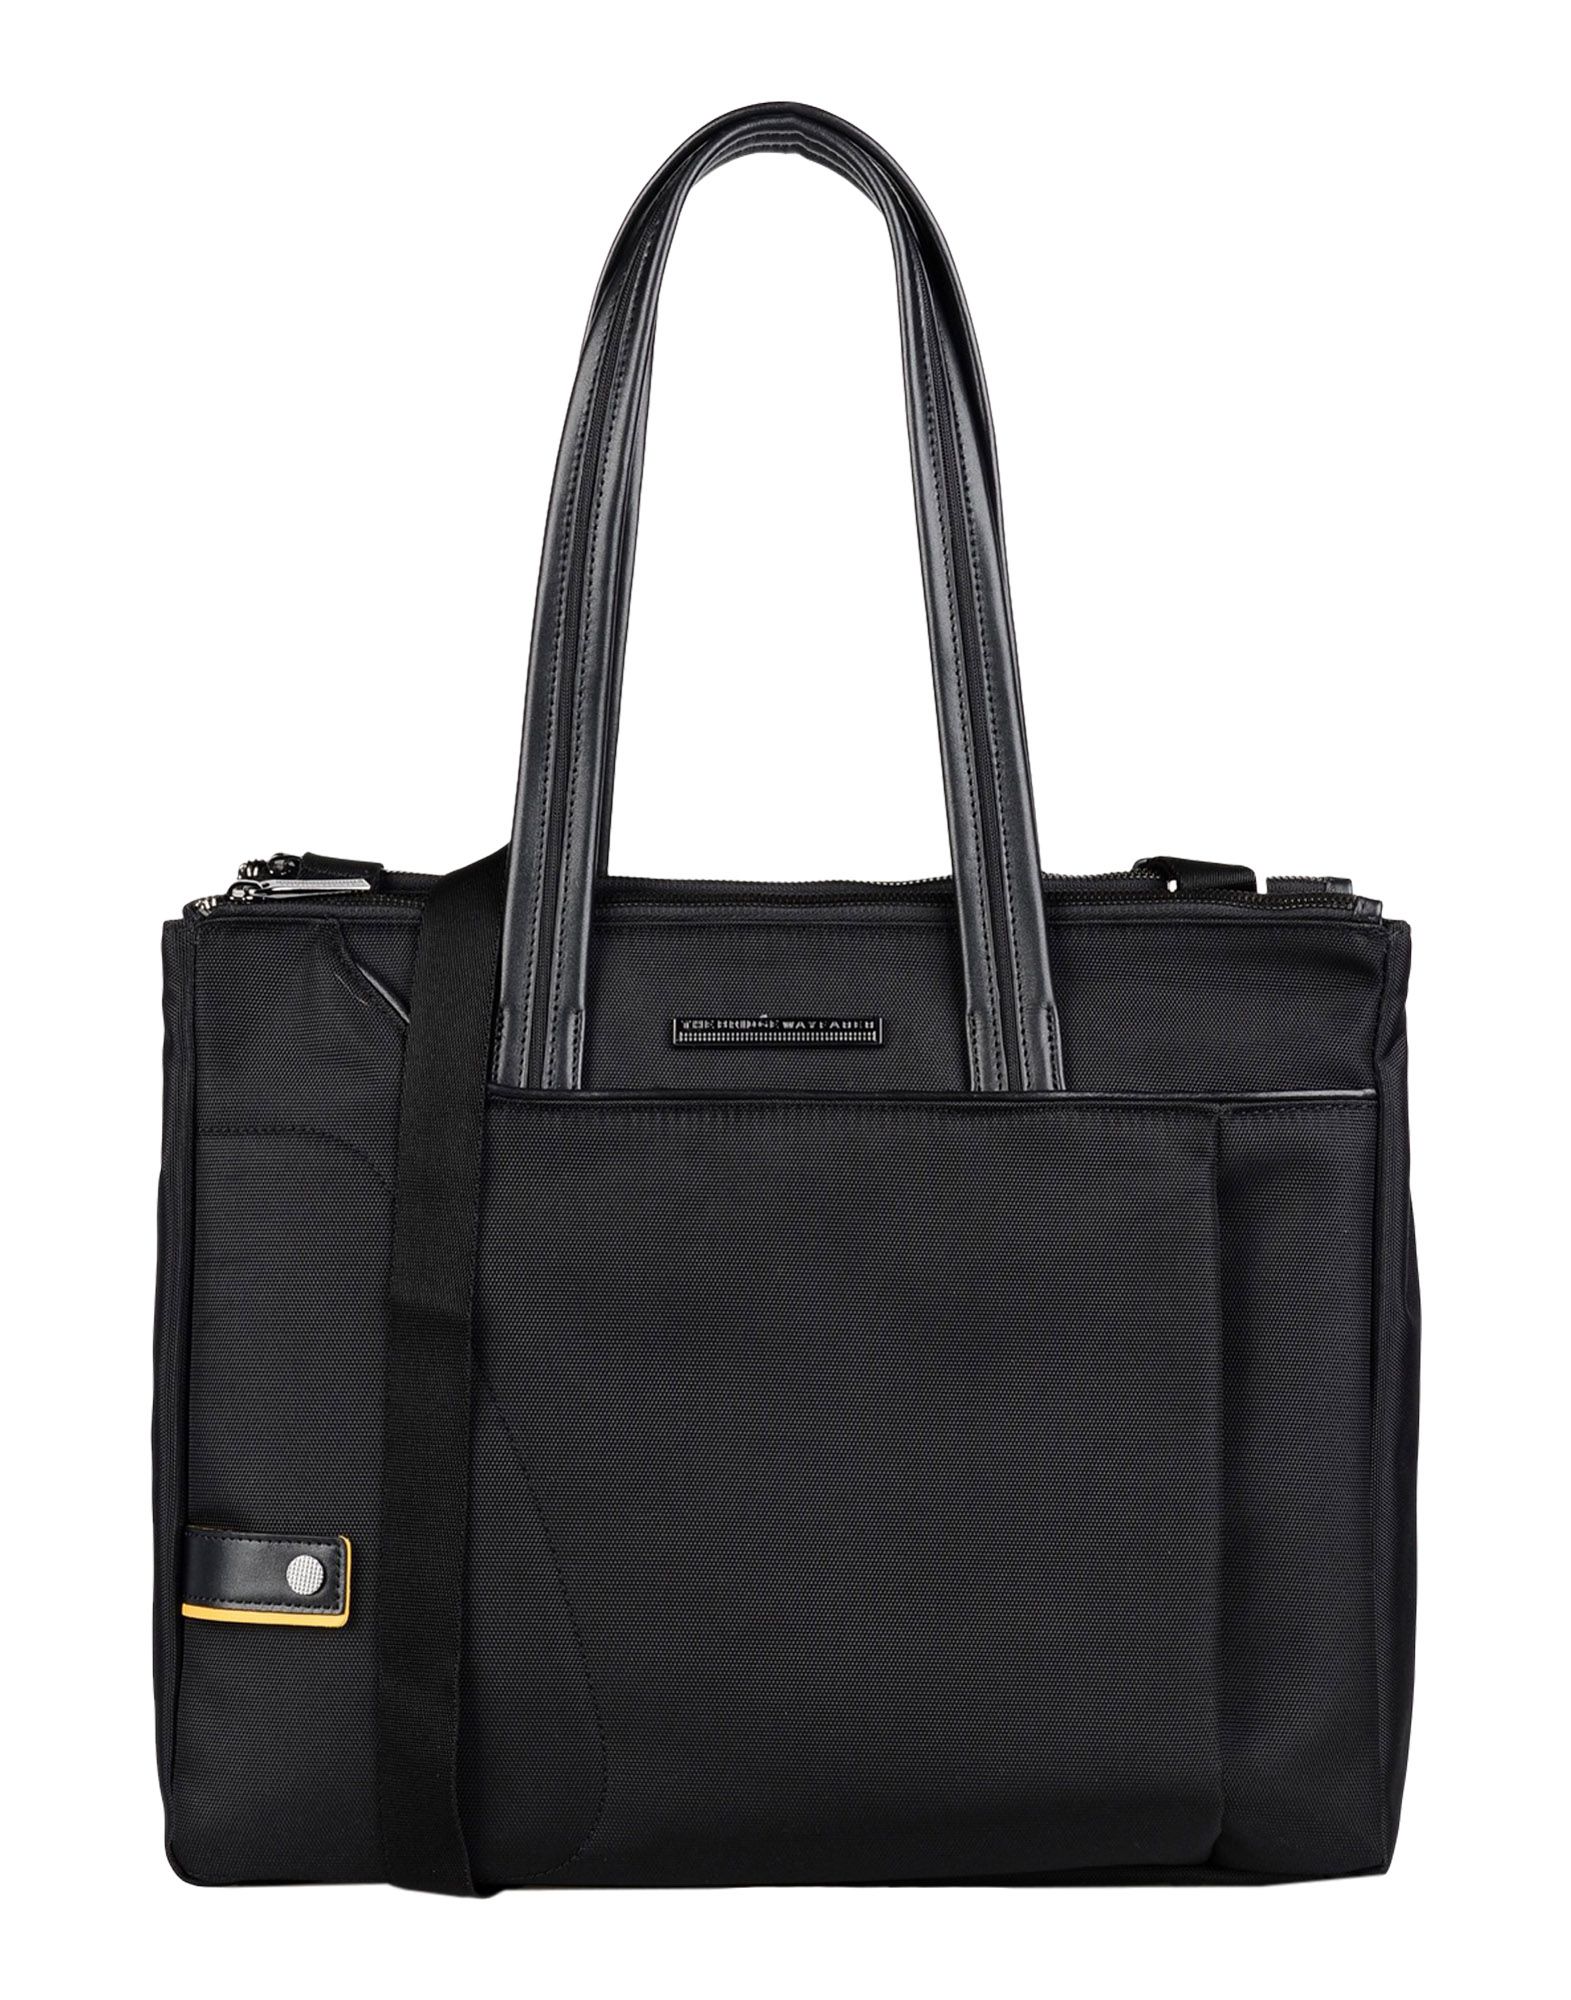 Деловая сумка  - Коричневый,Черный цвет